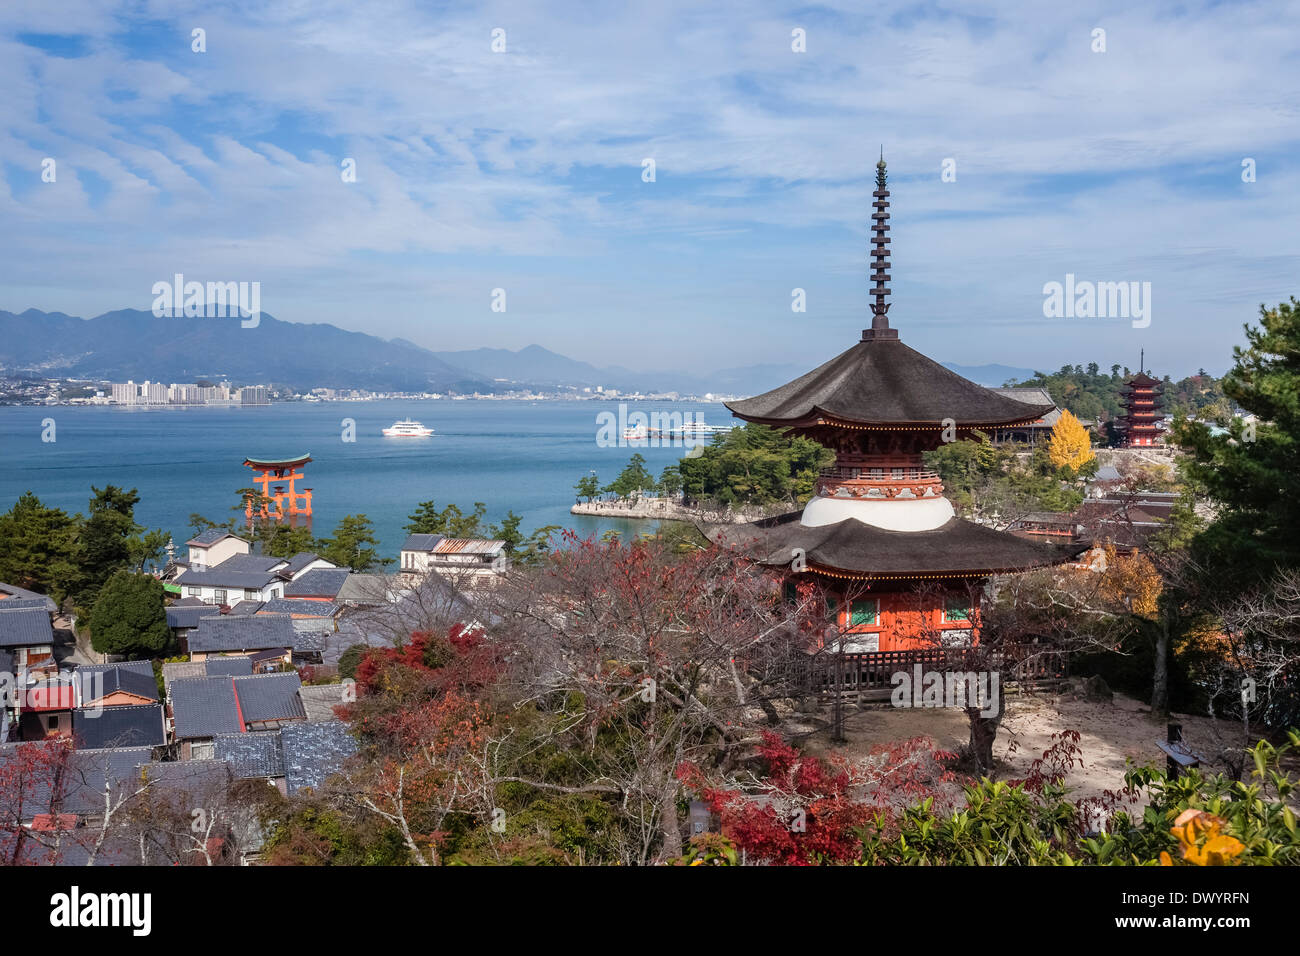 Itsukushima Shrine, Hatsukaichi, Hiroshima Prefecture, Japan Stock Photo